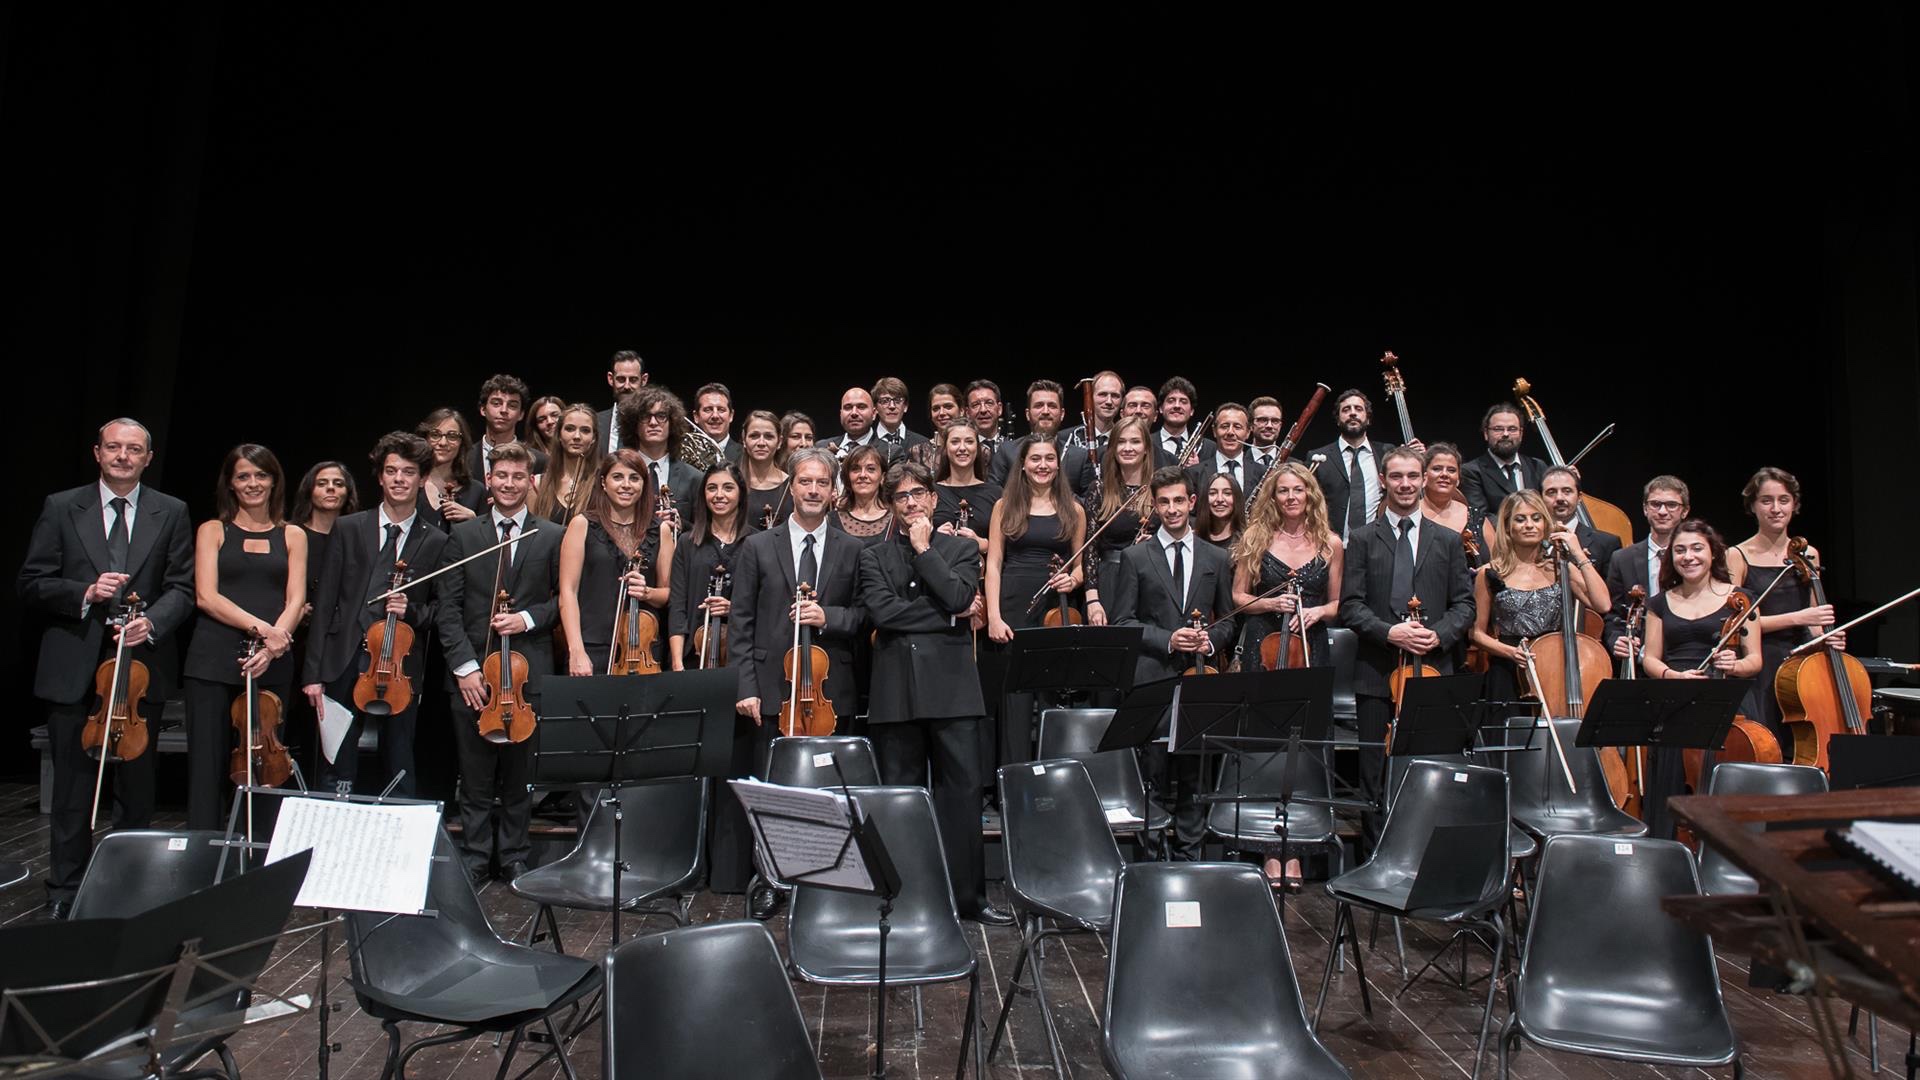 Arezzo città della musica saluta il 2019 con il “Concerto di Capodanno”